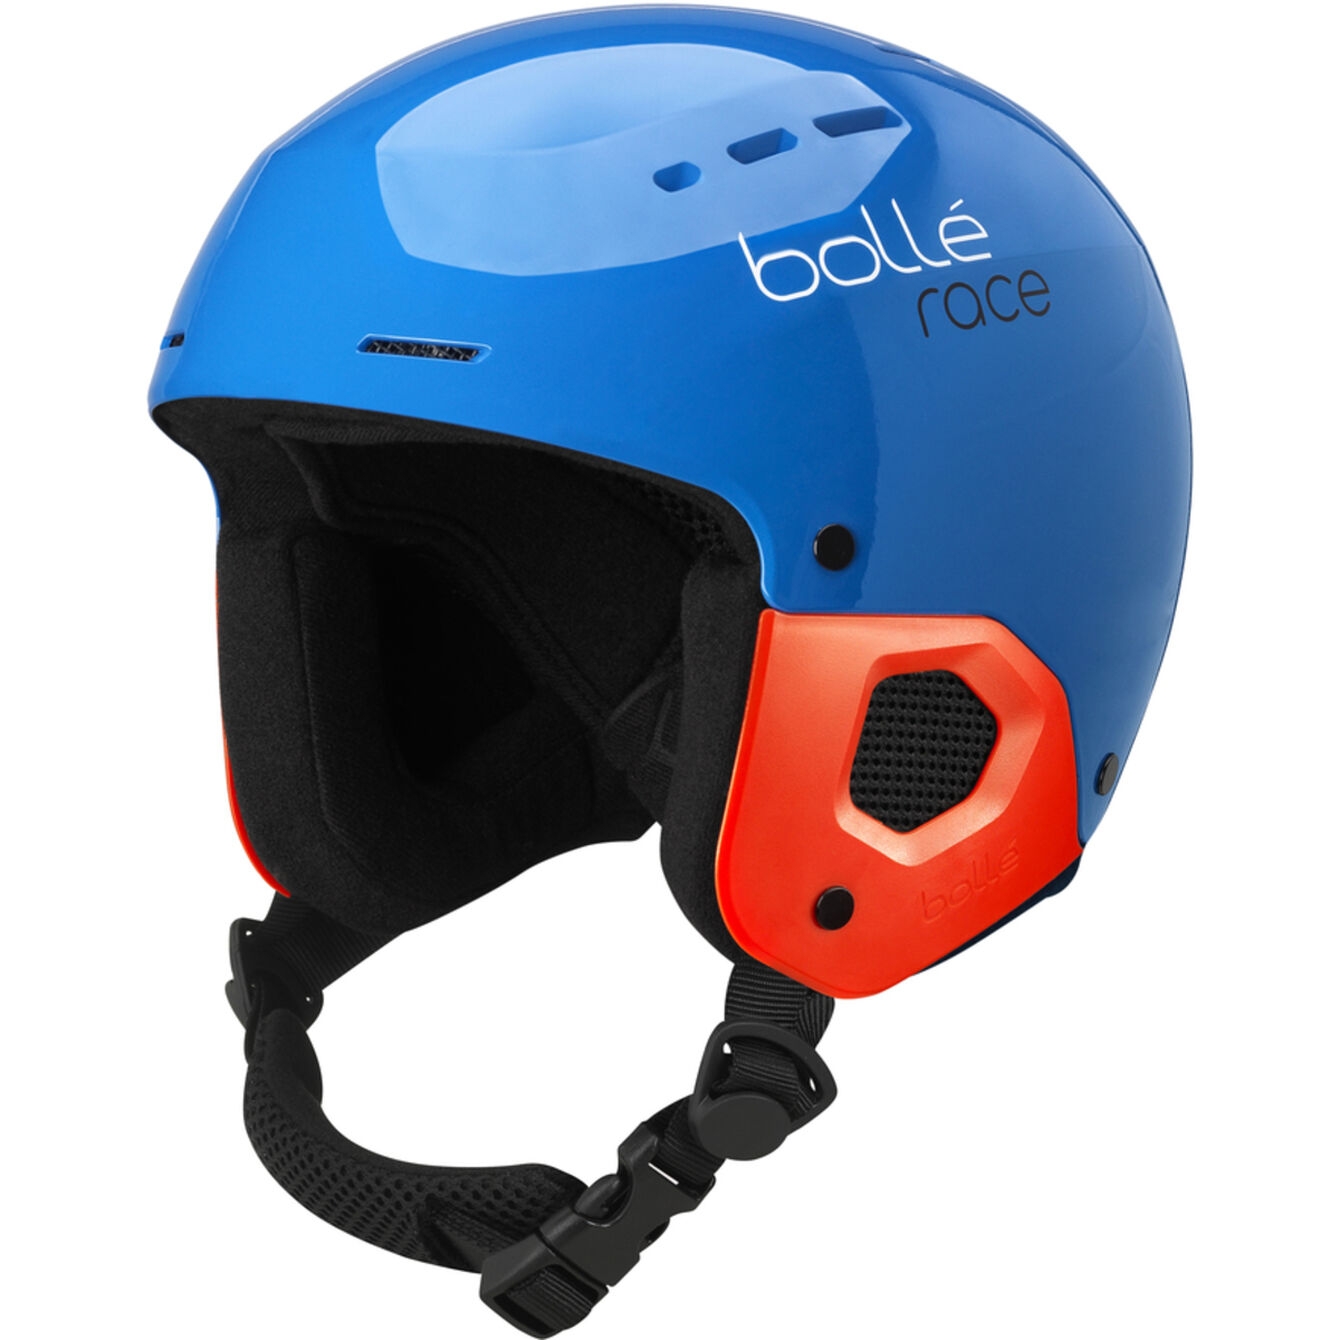 Bollé MEDALIST Ski Racing Helmet - FIS Approved Racing Helmet Snow